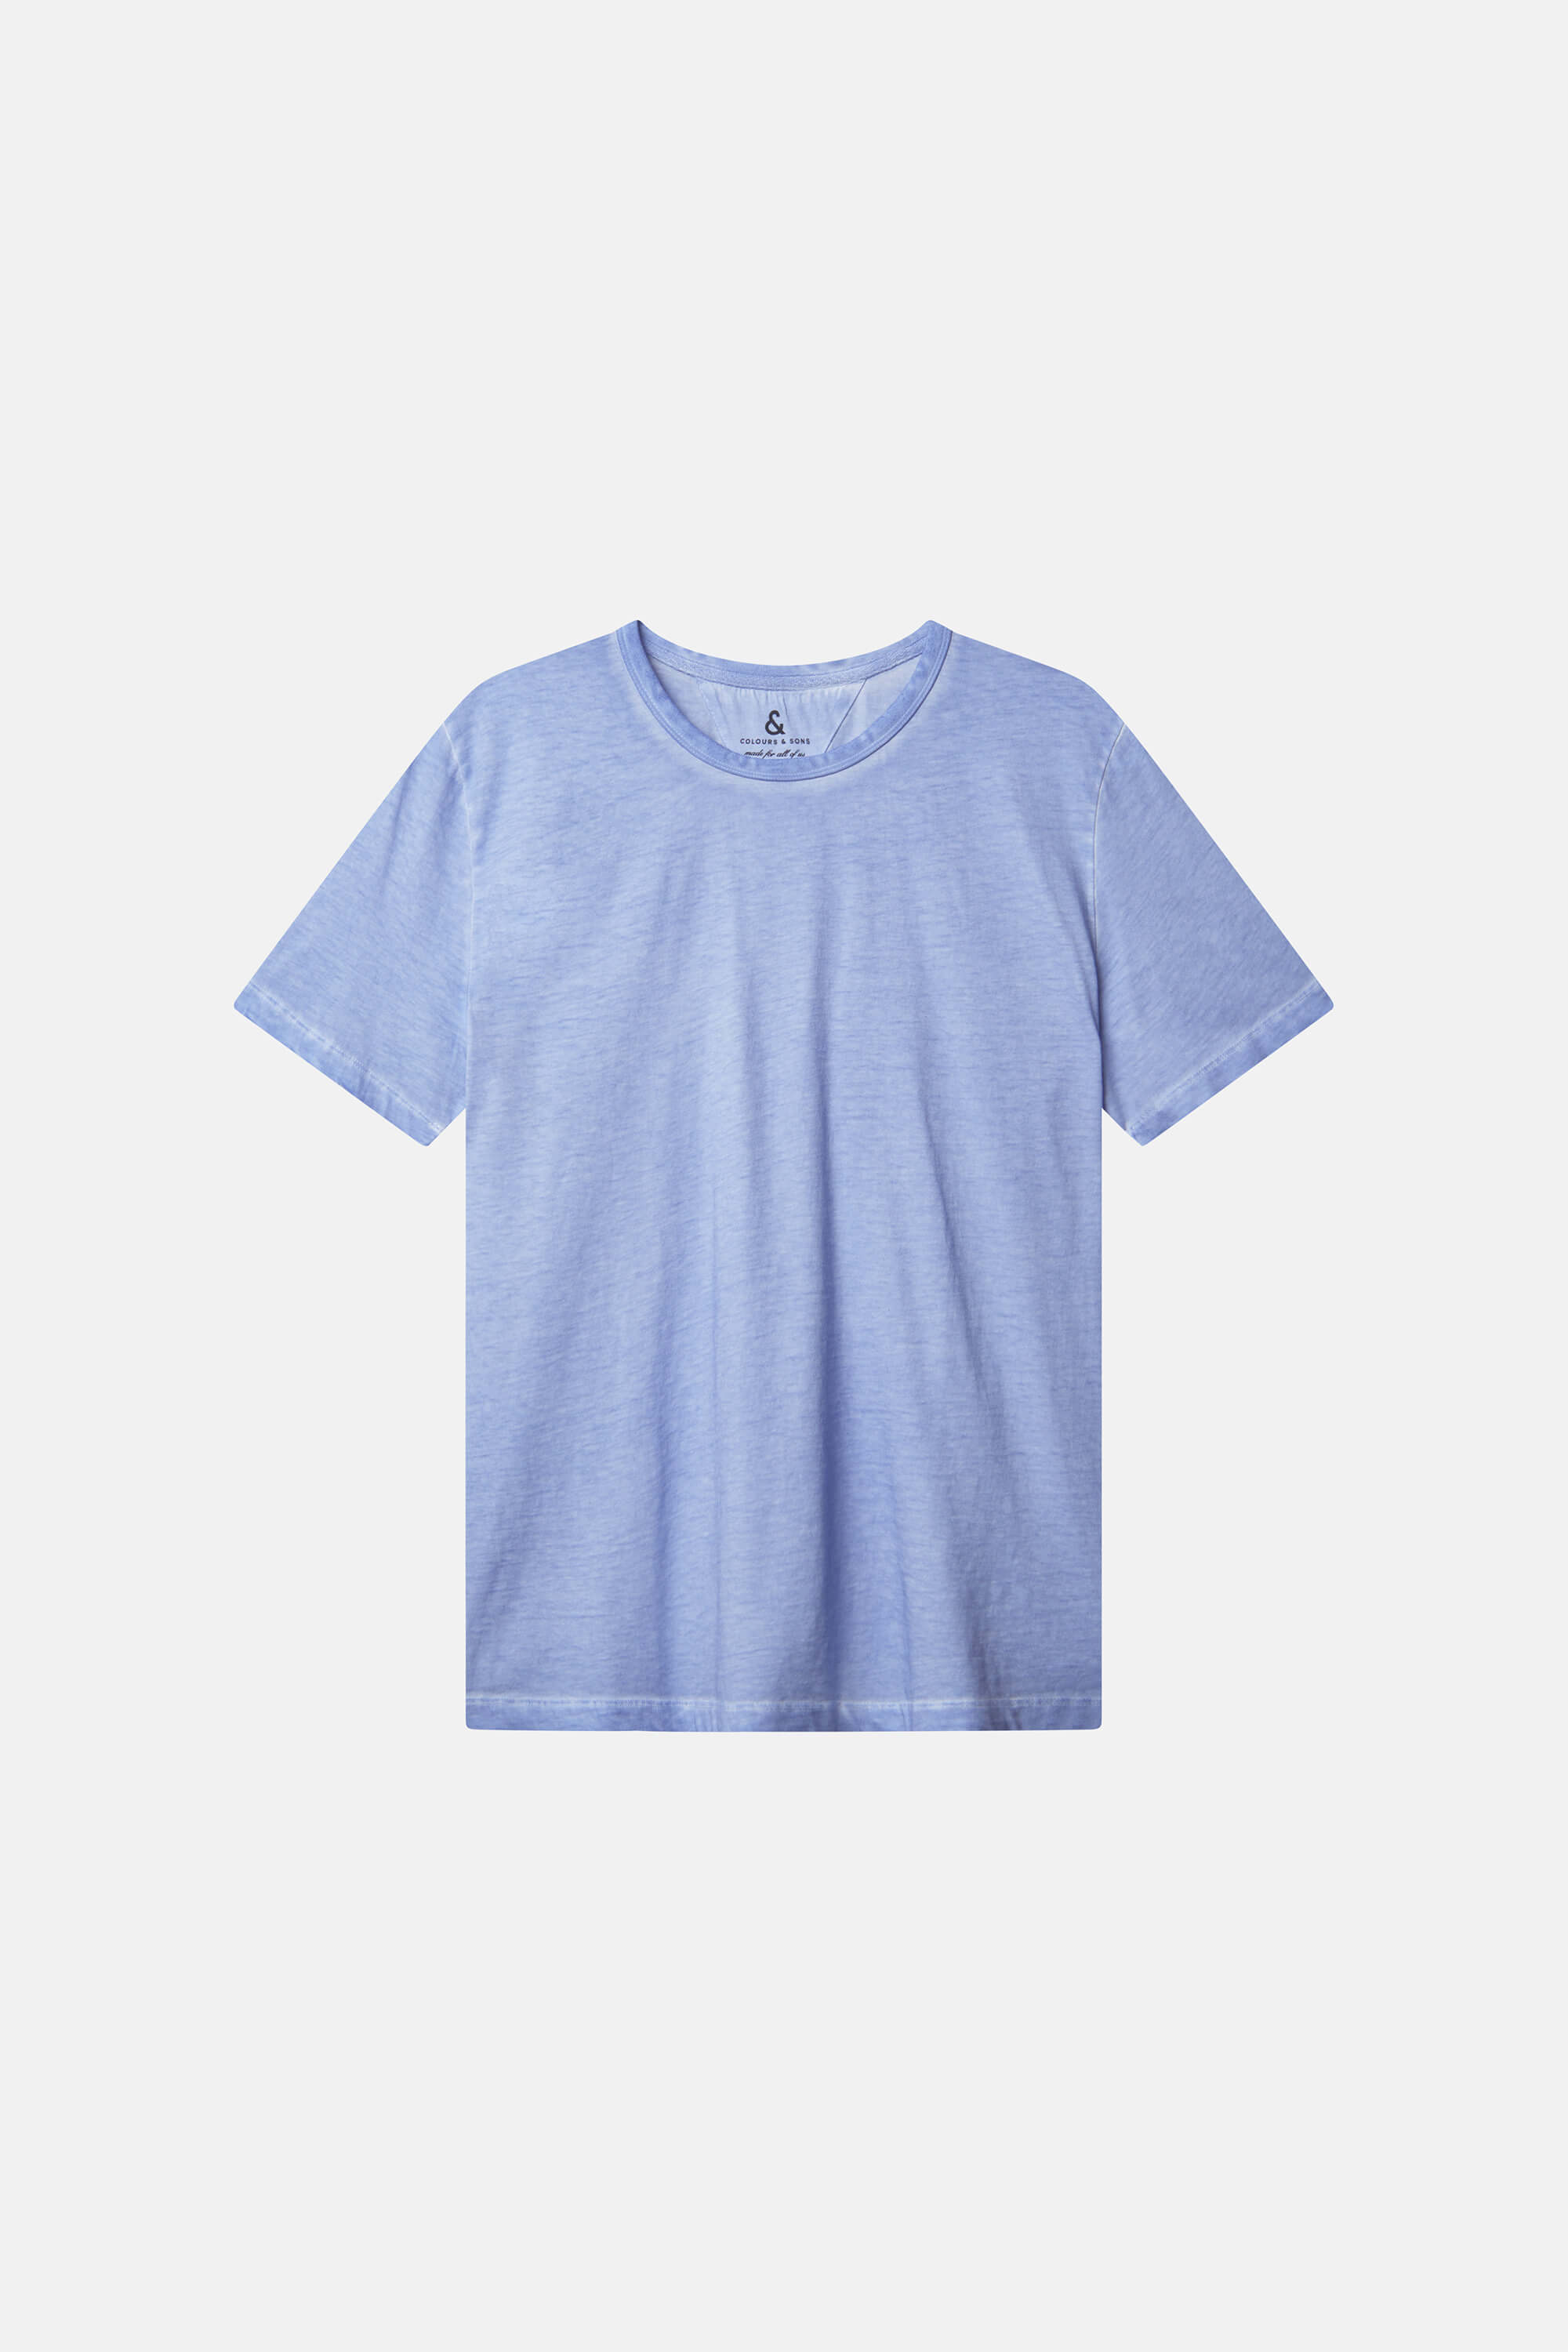 Herren T-Shirt hellblau, 100% Baumwolle von Colours & Sons